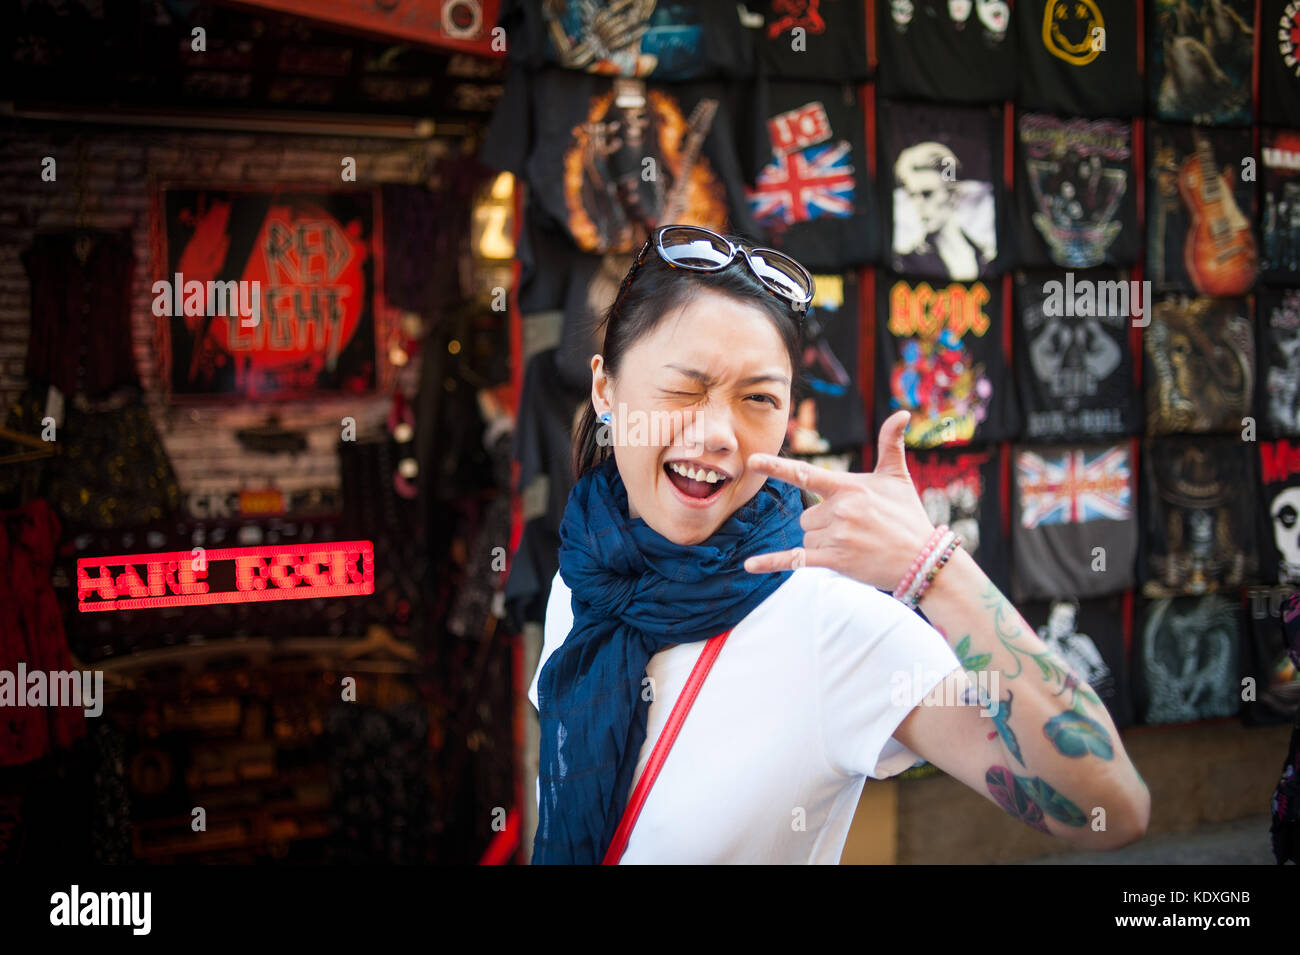 Tattoed girl smiling at camera Stock Photo